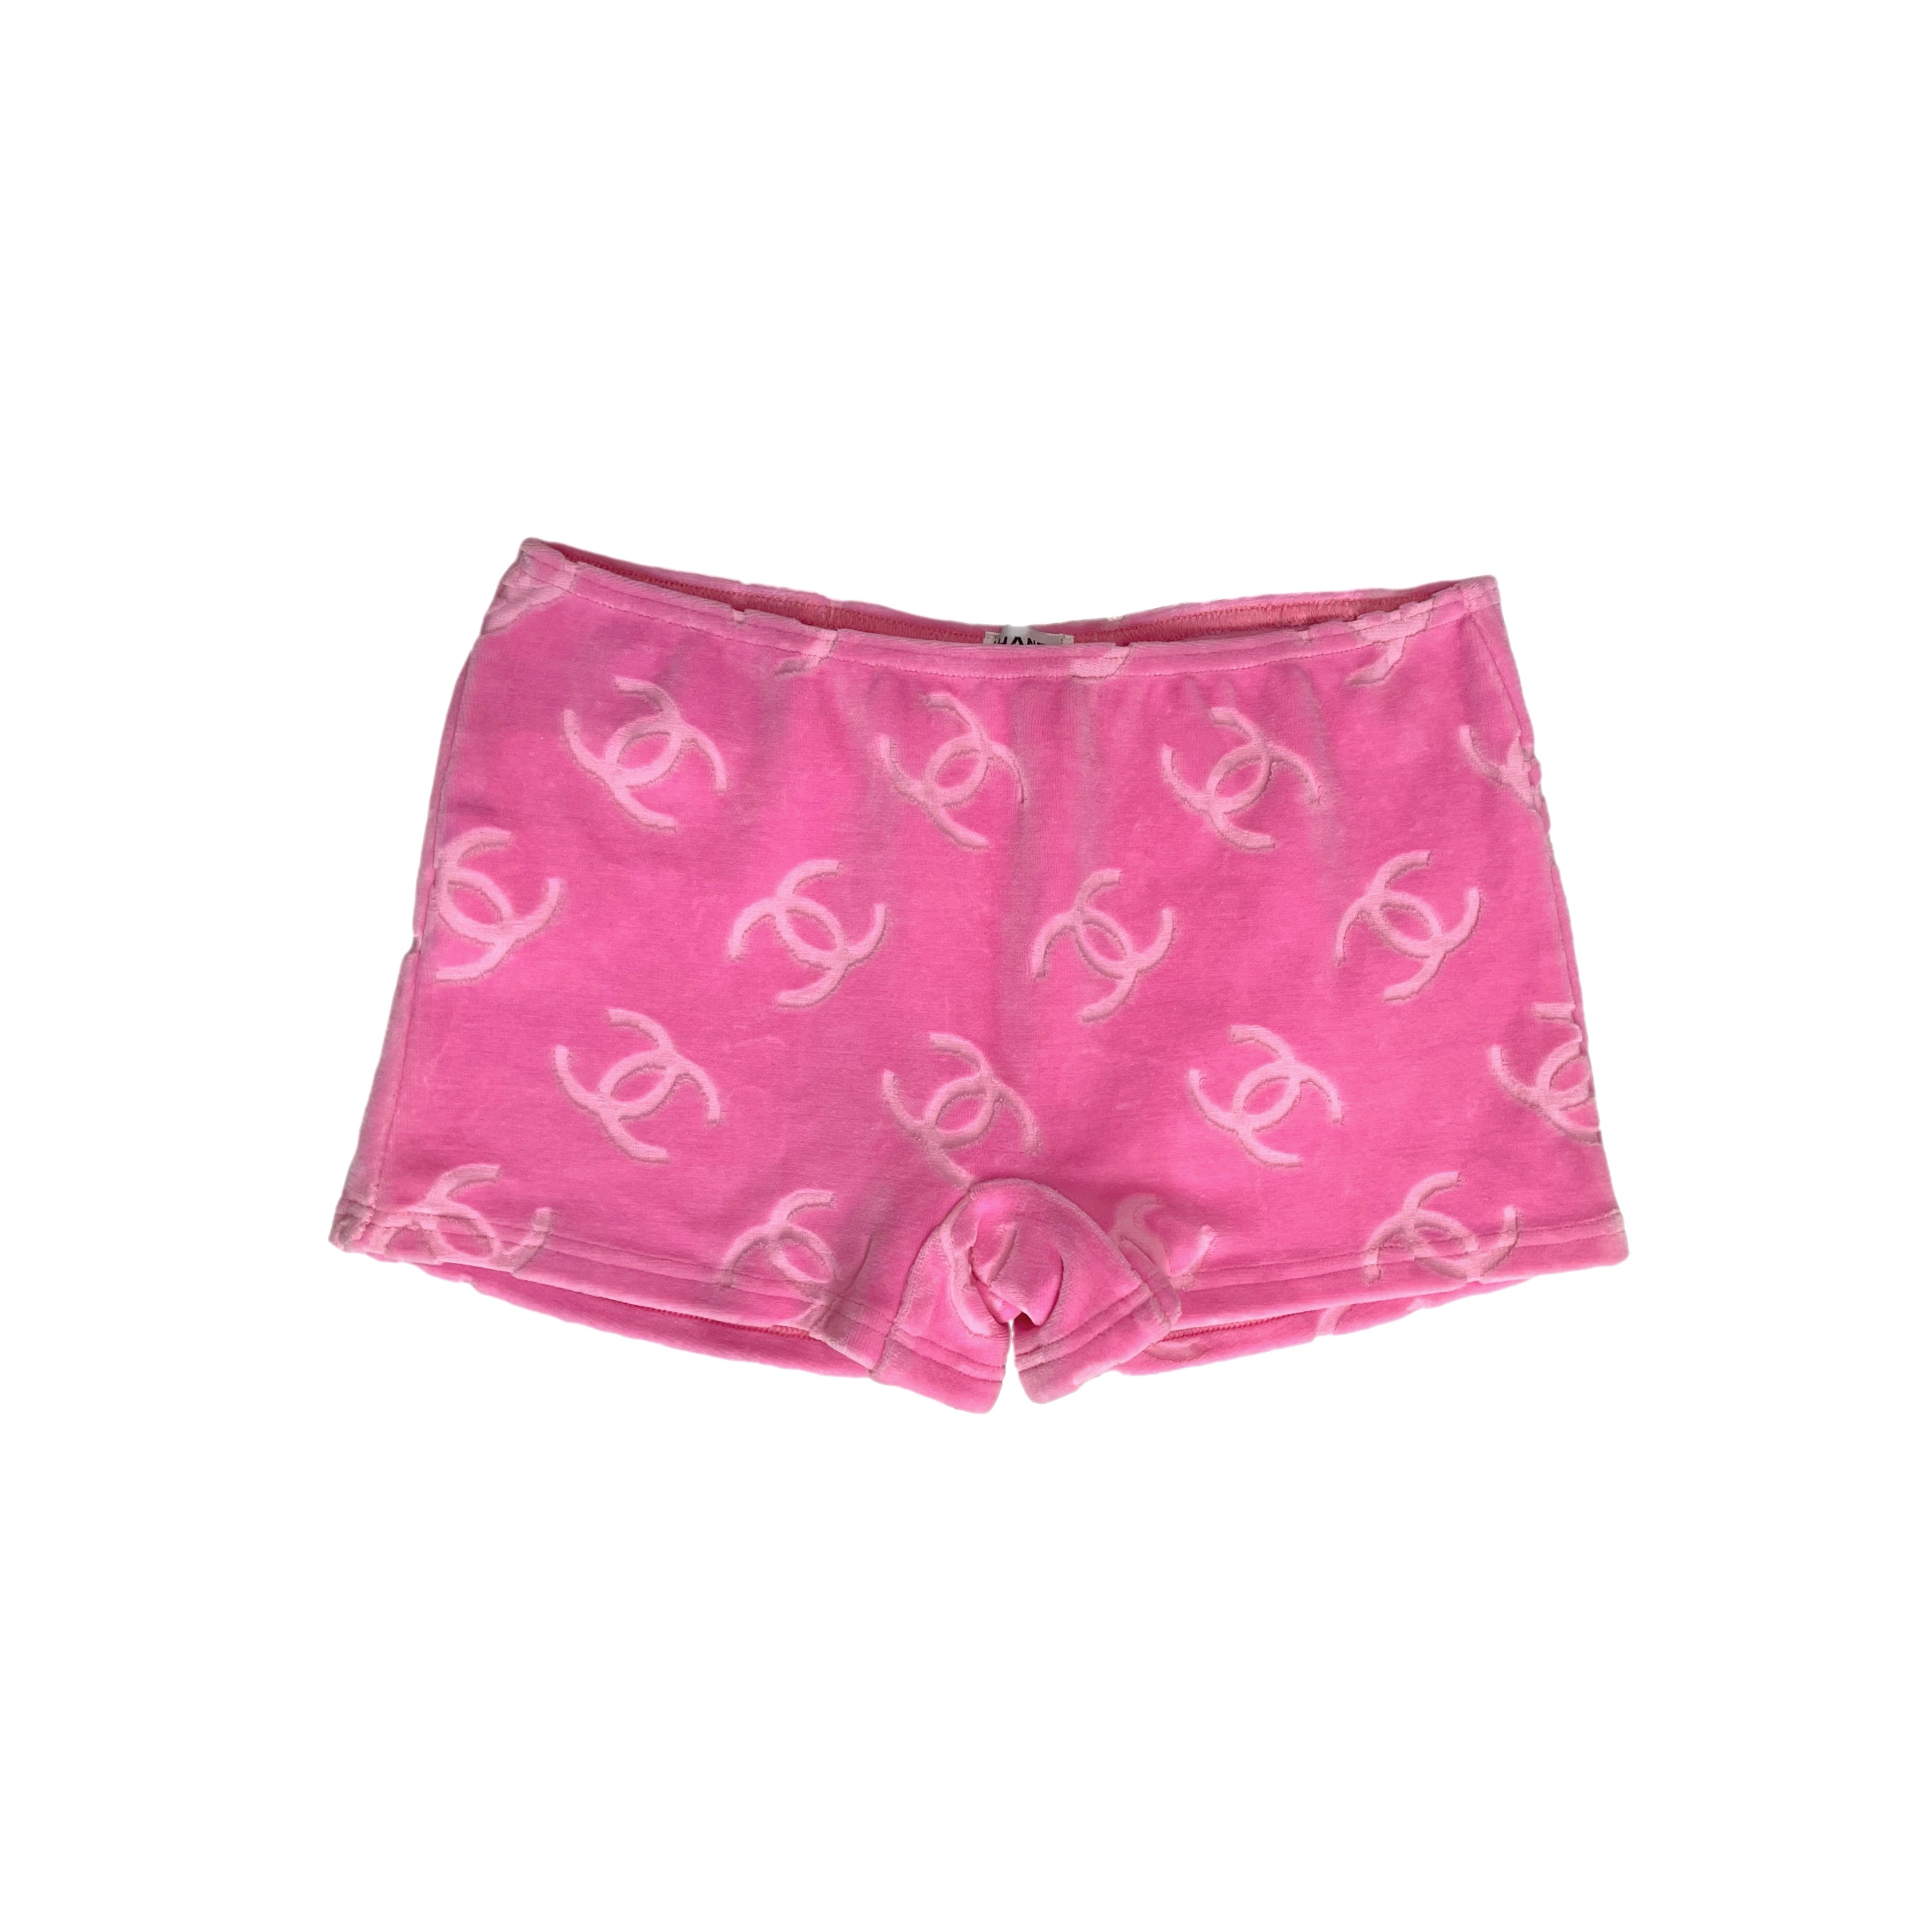 Chanel Velour Pink Short Jumpsuit 1996 CC